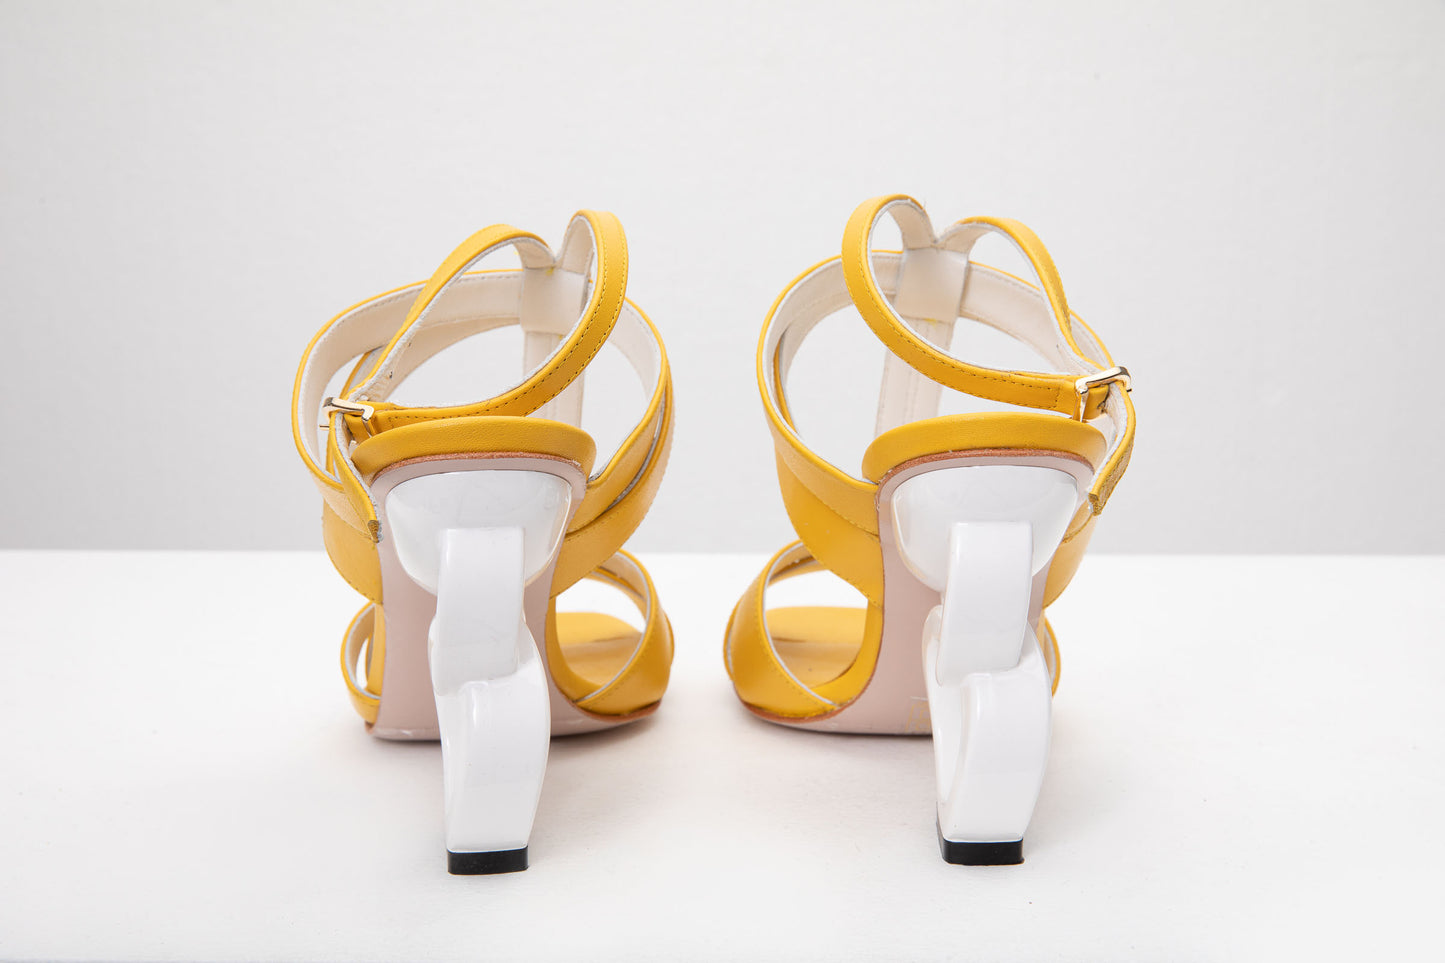 The Duffryn Yellow T-Strap Leather Women Sandal